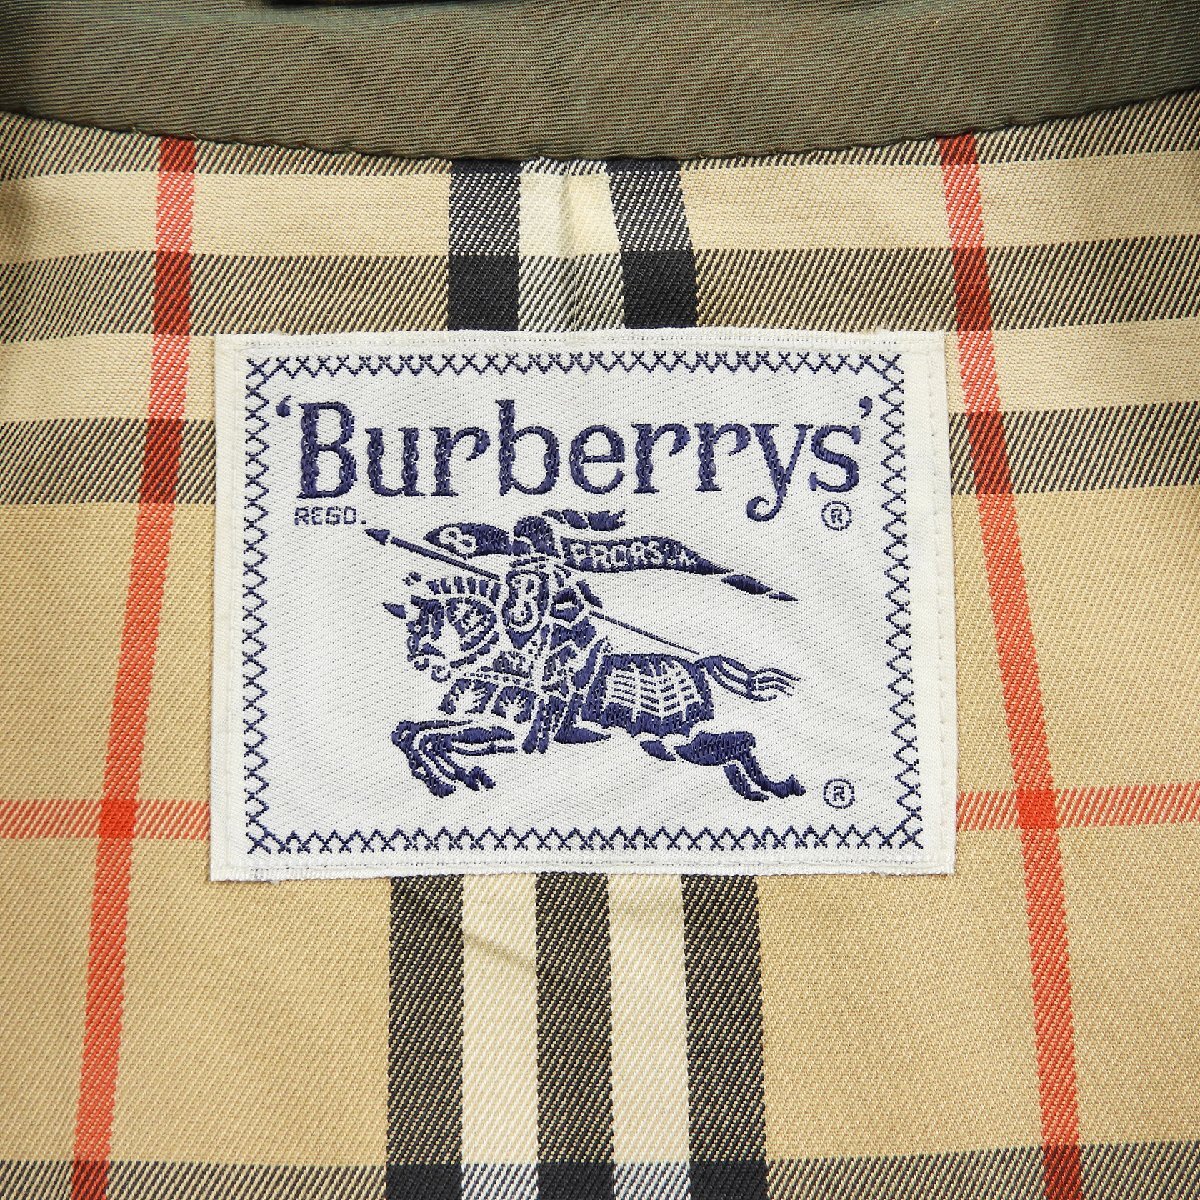 BURBERRY’S バーバリー ステンカラーコート レディース size M #18132 オールド ヴィンテージ 90's バーバリーズ きれいめ ビジネスの画像3